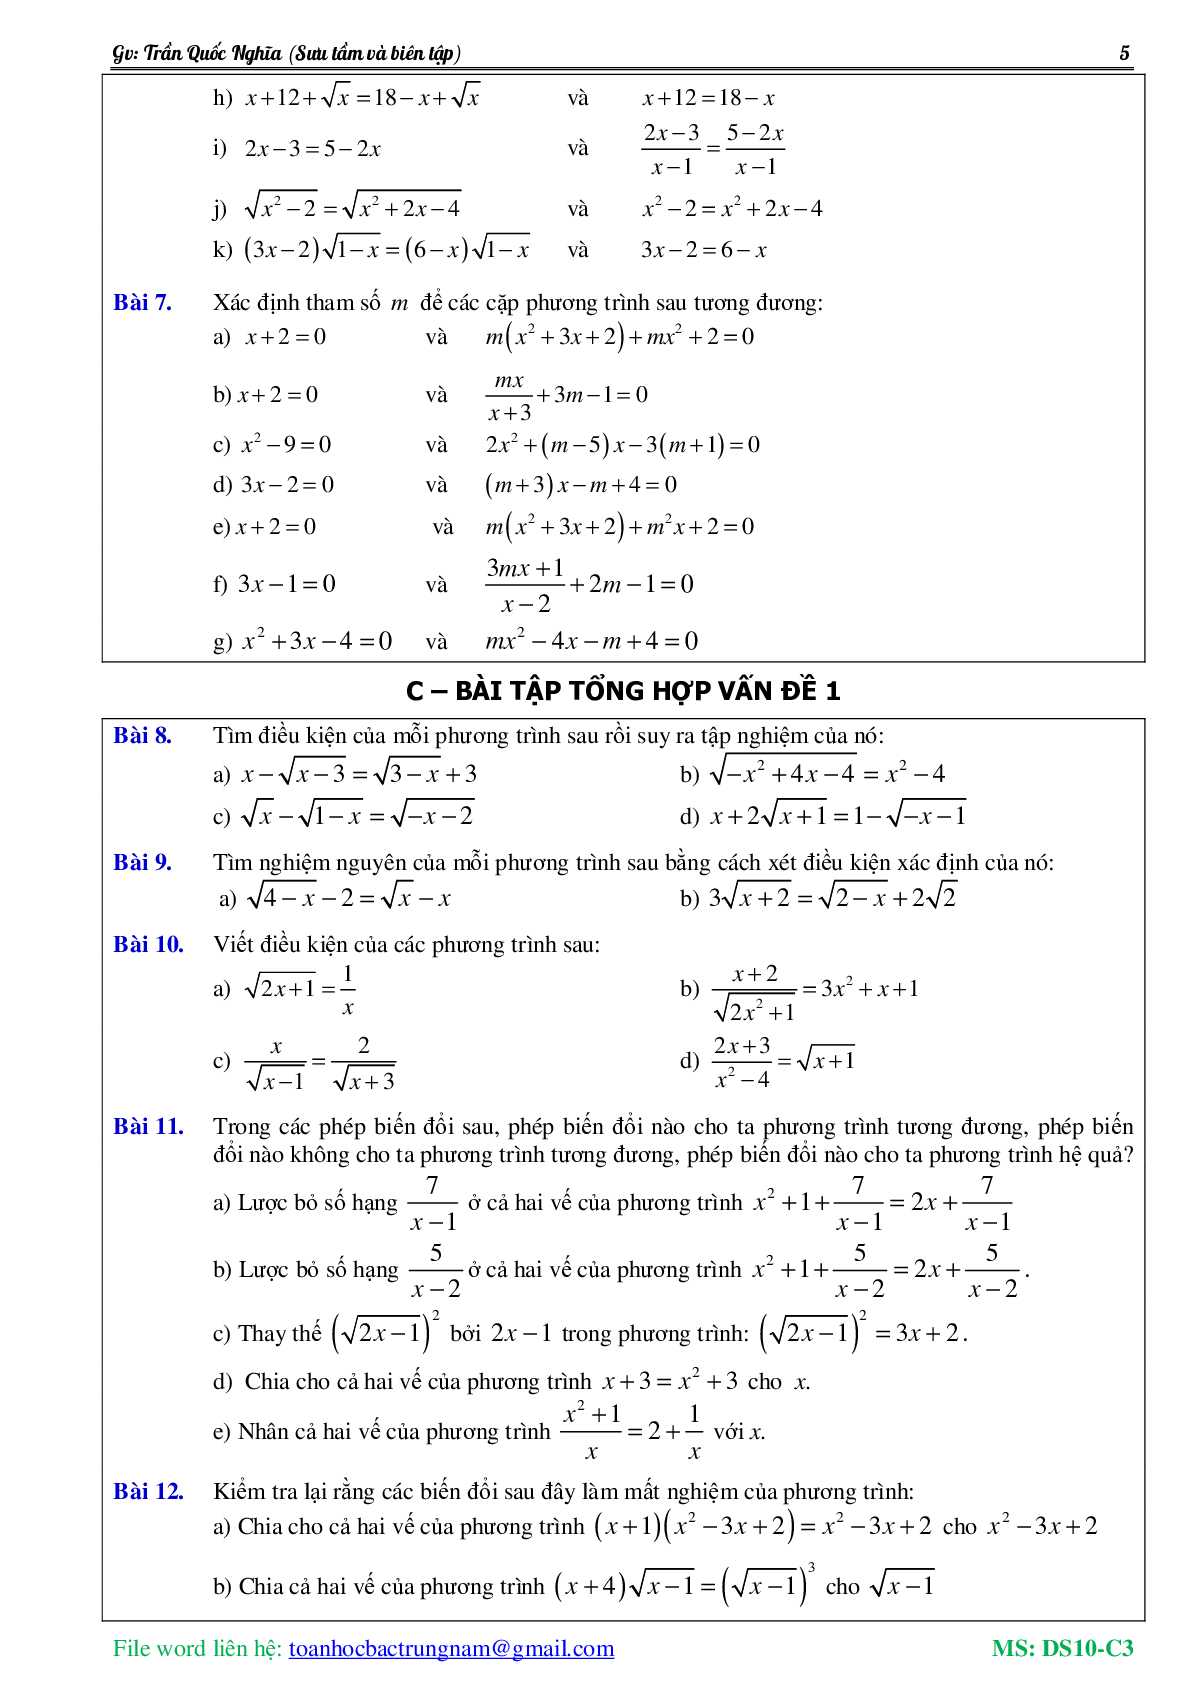 Lý thuyết, bài tập về Phương trình và hệ phương trình có đáp án (trang 6)